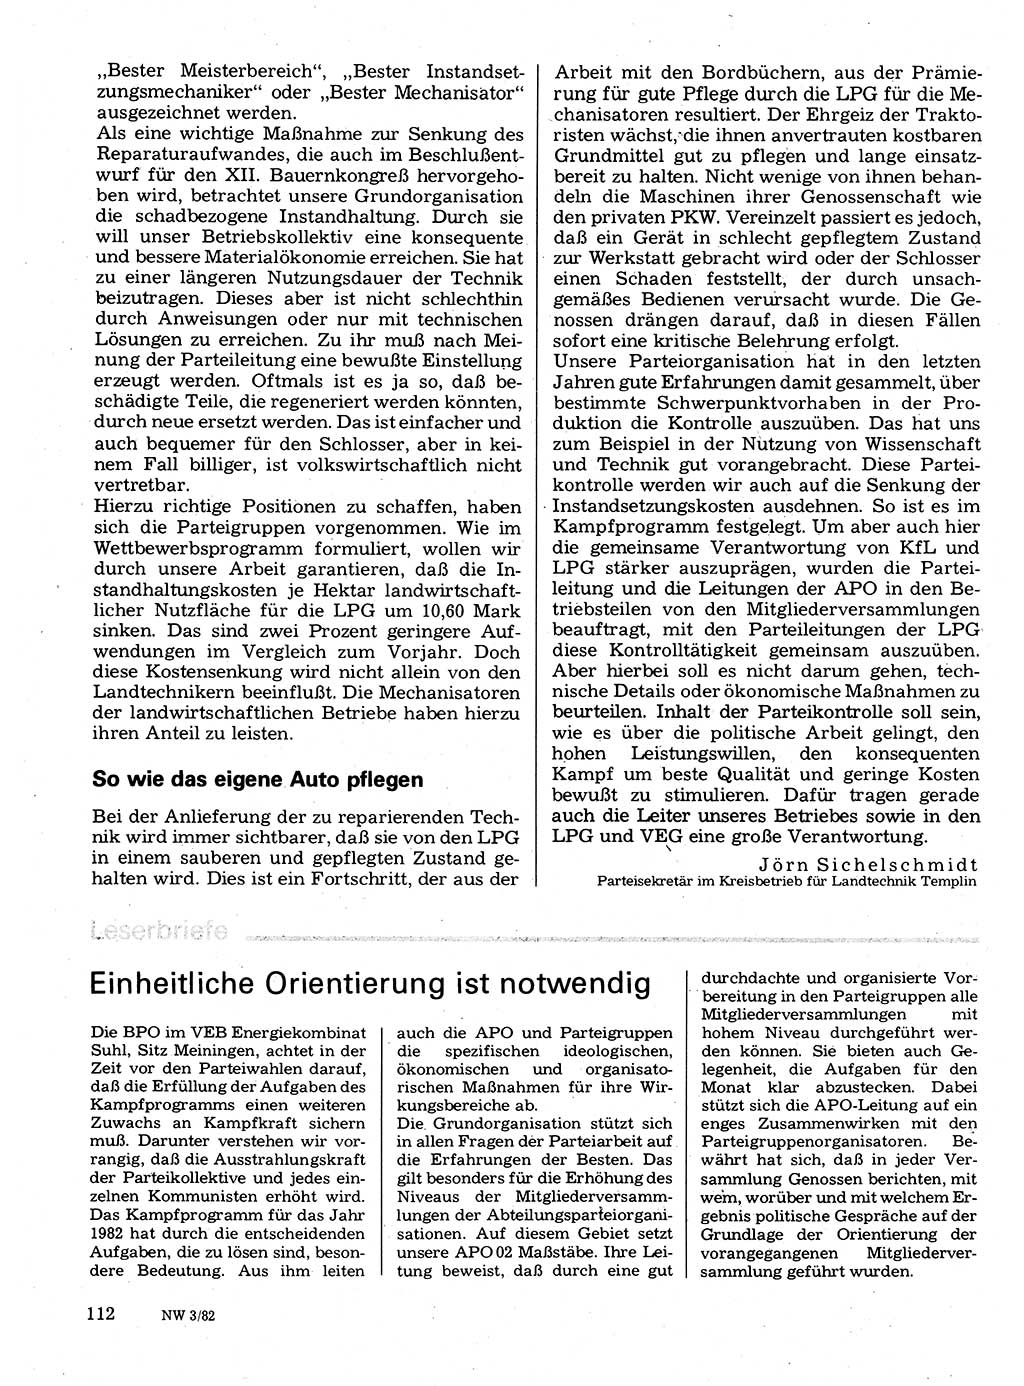 Neuer Weg (NW), Organ des Zentralkomitees (ZK) der SED (Sozialistische Einheitspartei Deutschlands) für Fragen des Parteilebens, 37. Jahrgang [Deutsche Demokratische Republik (DDR)] 1982, Seite 112 (NW ZK SED DDR 1982, S. 112)